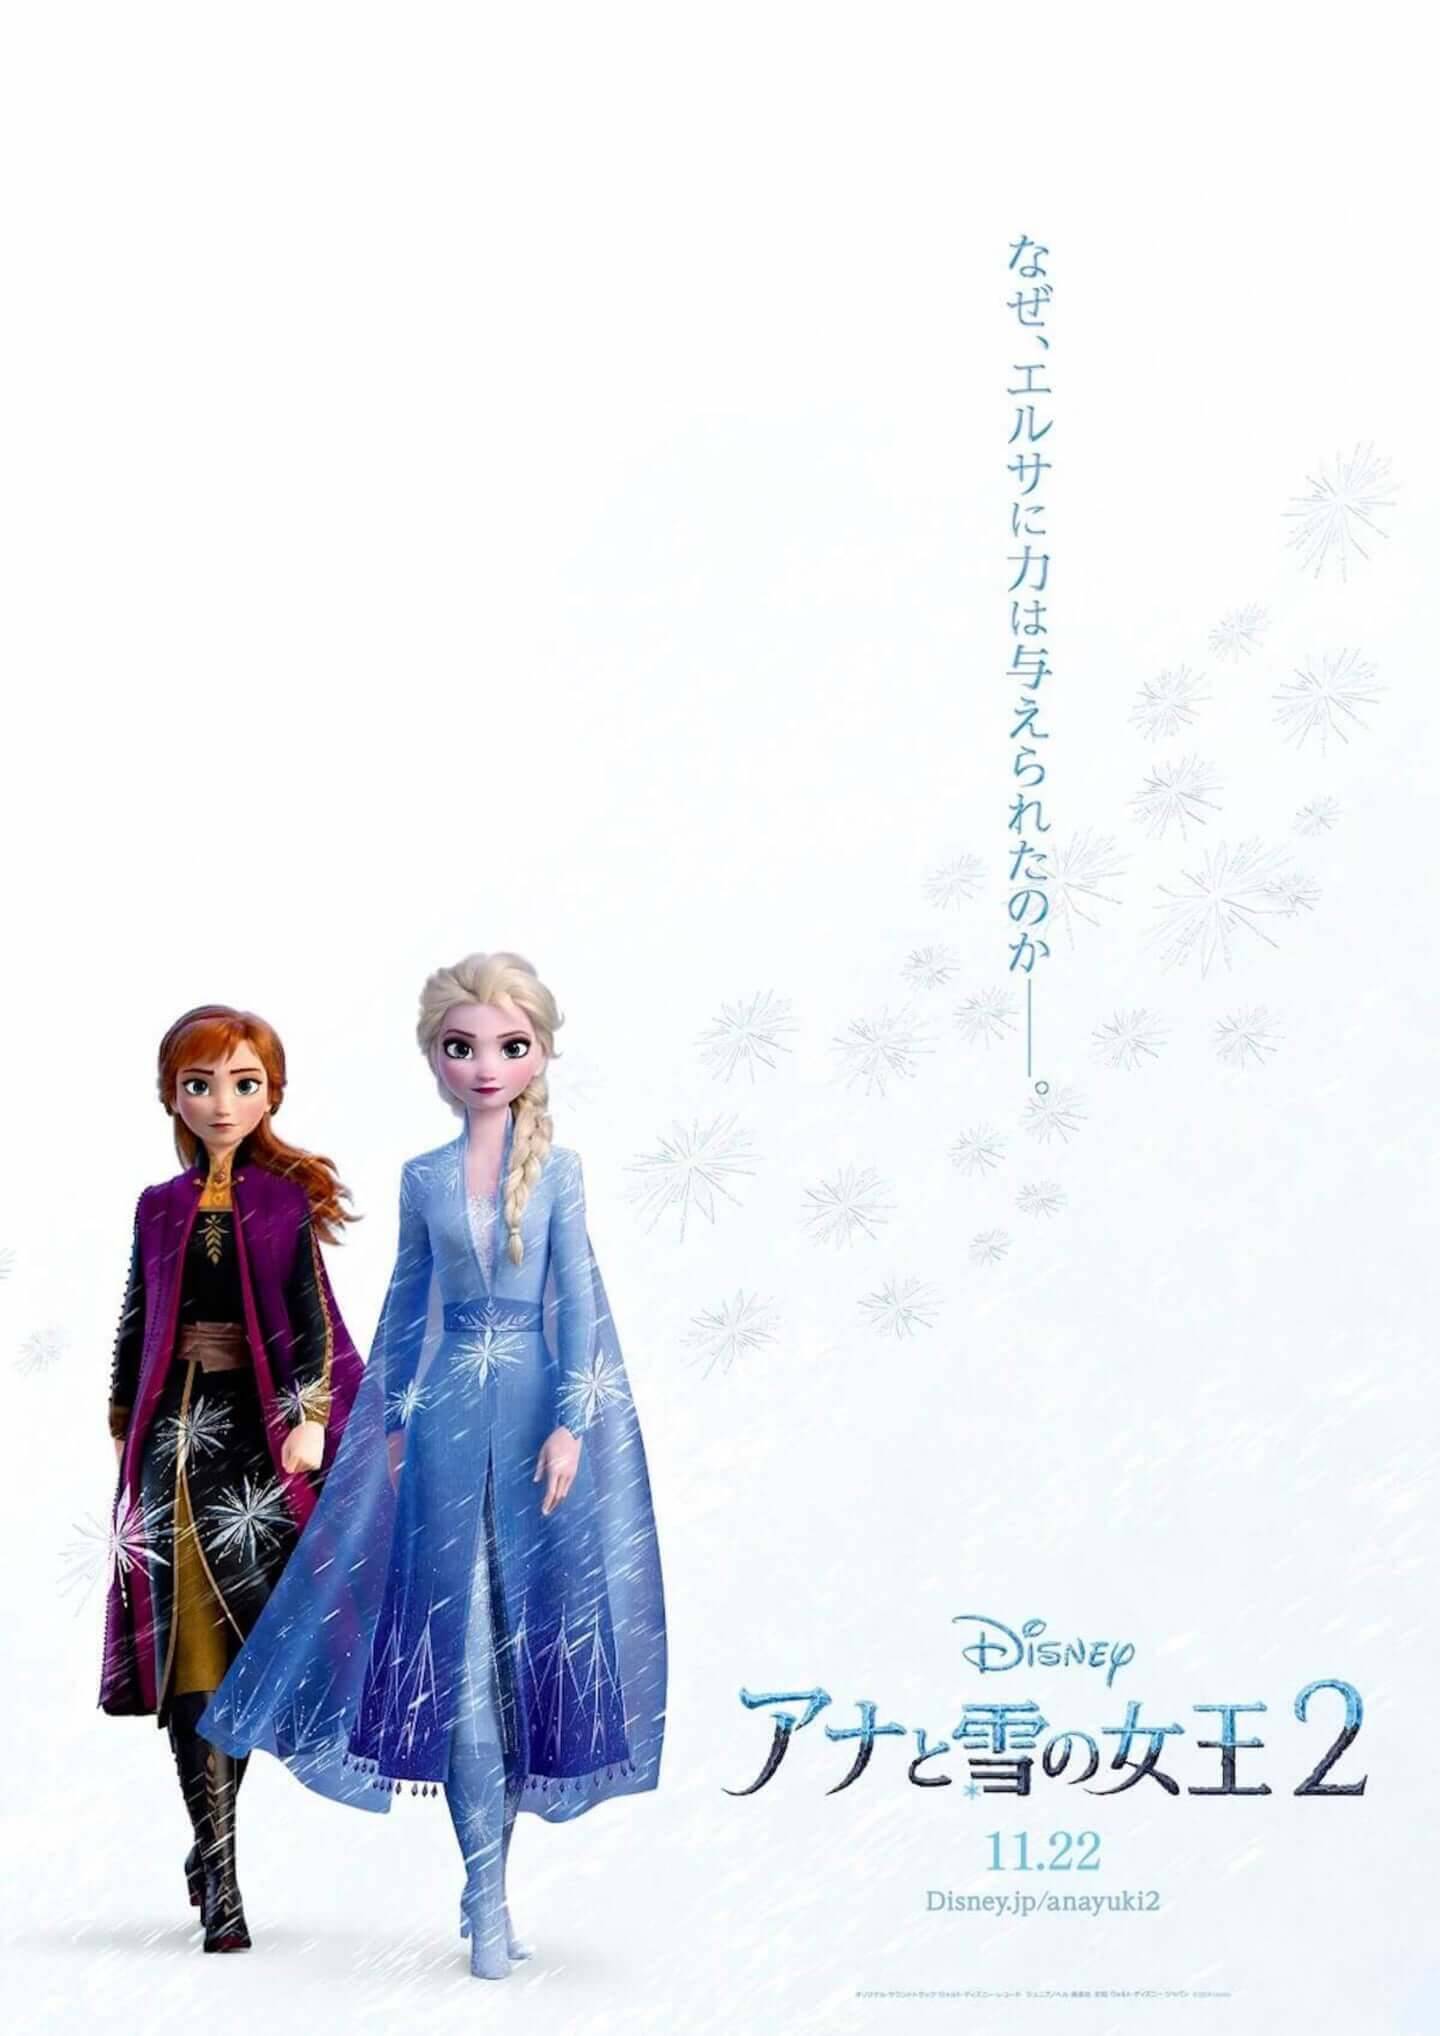 エルサの魔法で日本中が凍る！？『アナと雪の女王2』公開直前、エルサが日本中を凍らせる”スペシャル企画スタート (2019年11月15日